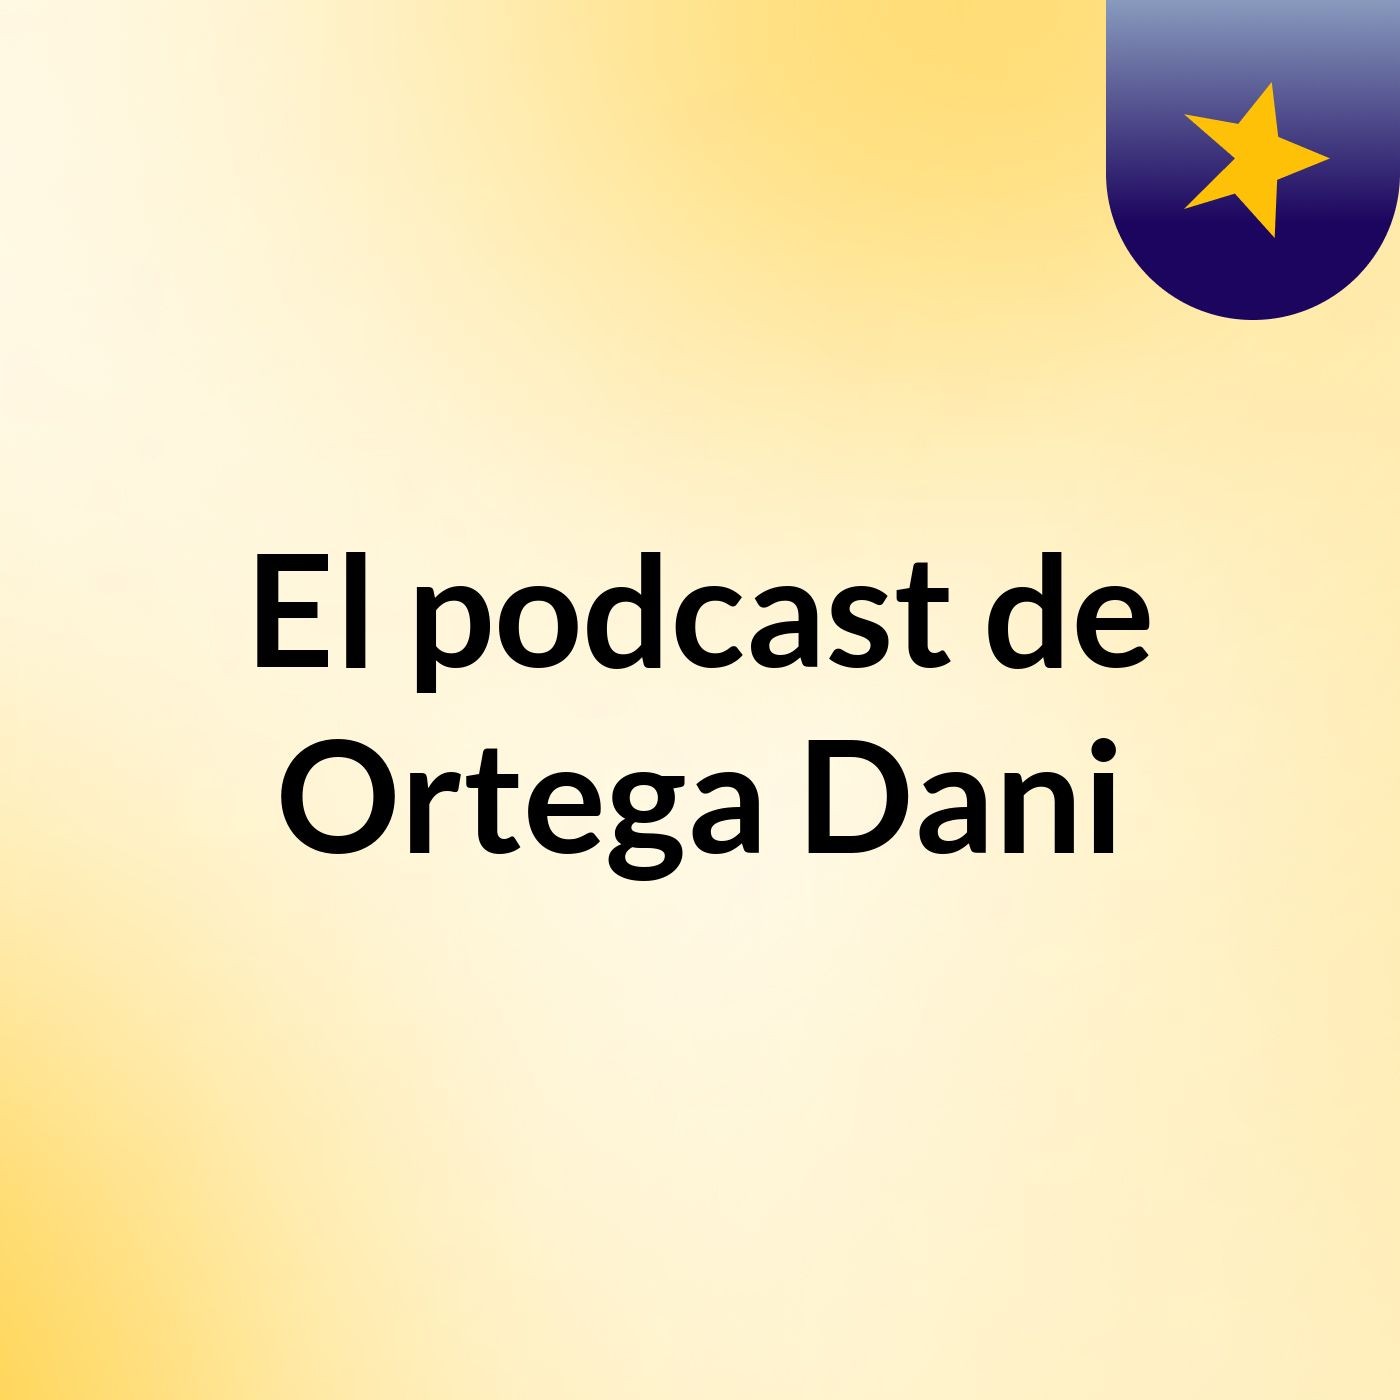 El podcast de Ortega Dani